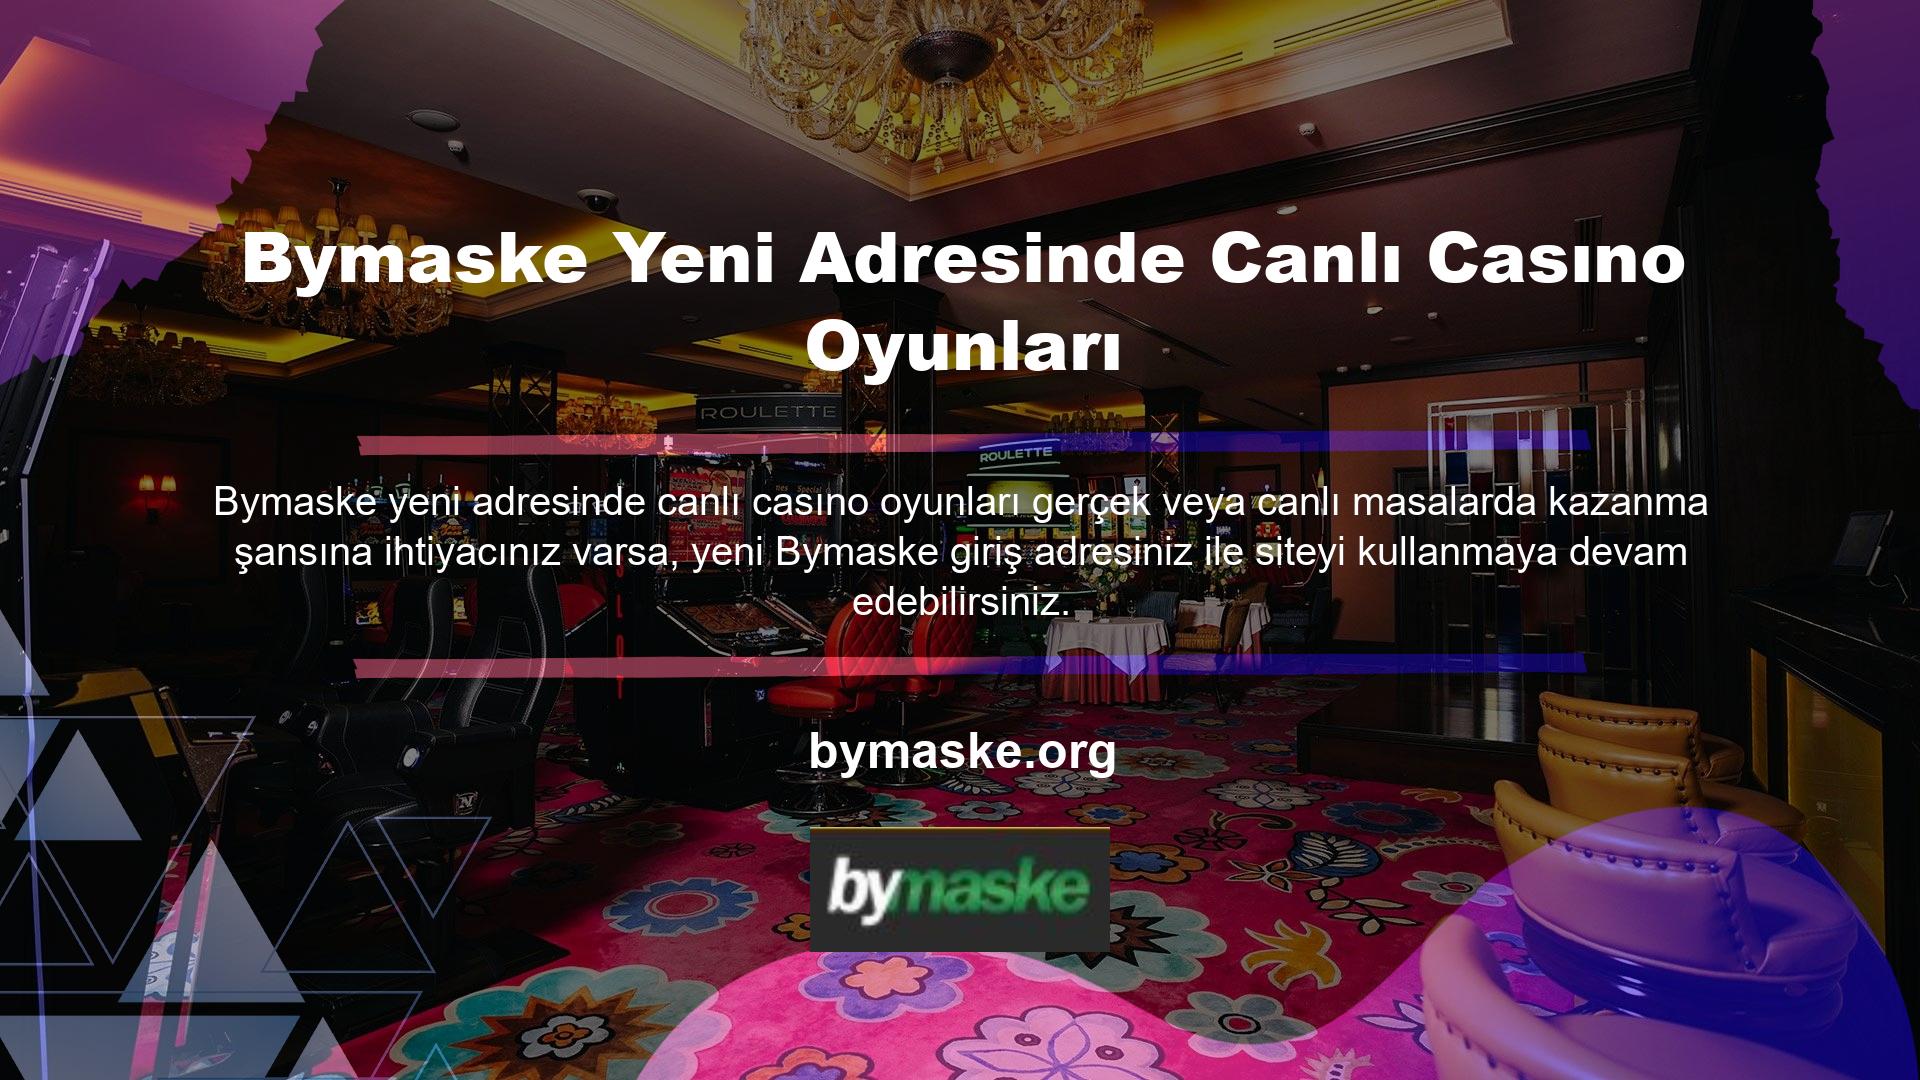 Canlı casino oyunları yeni Bymaske adresinde aynı şartlarla sunulmaya devam edecektir